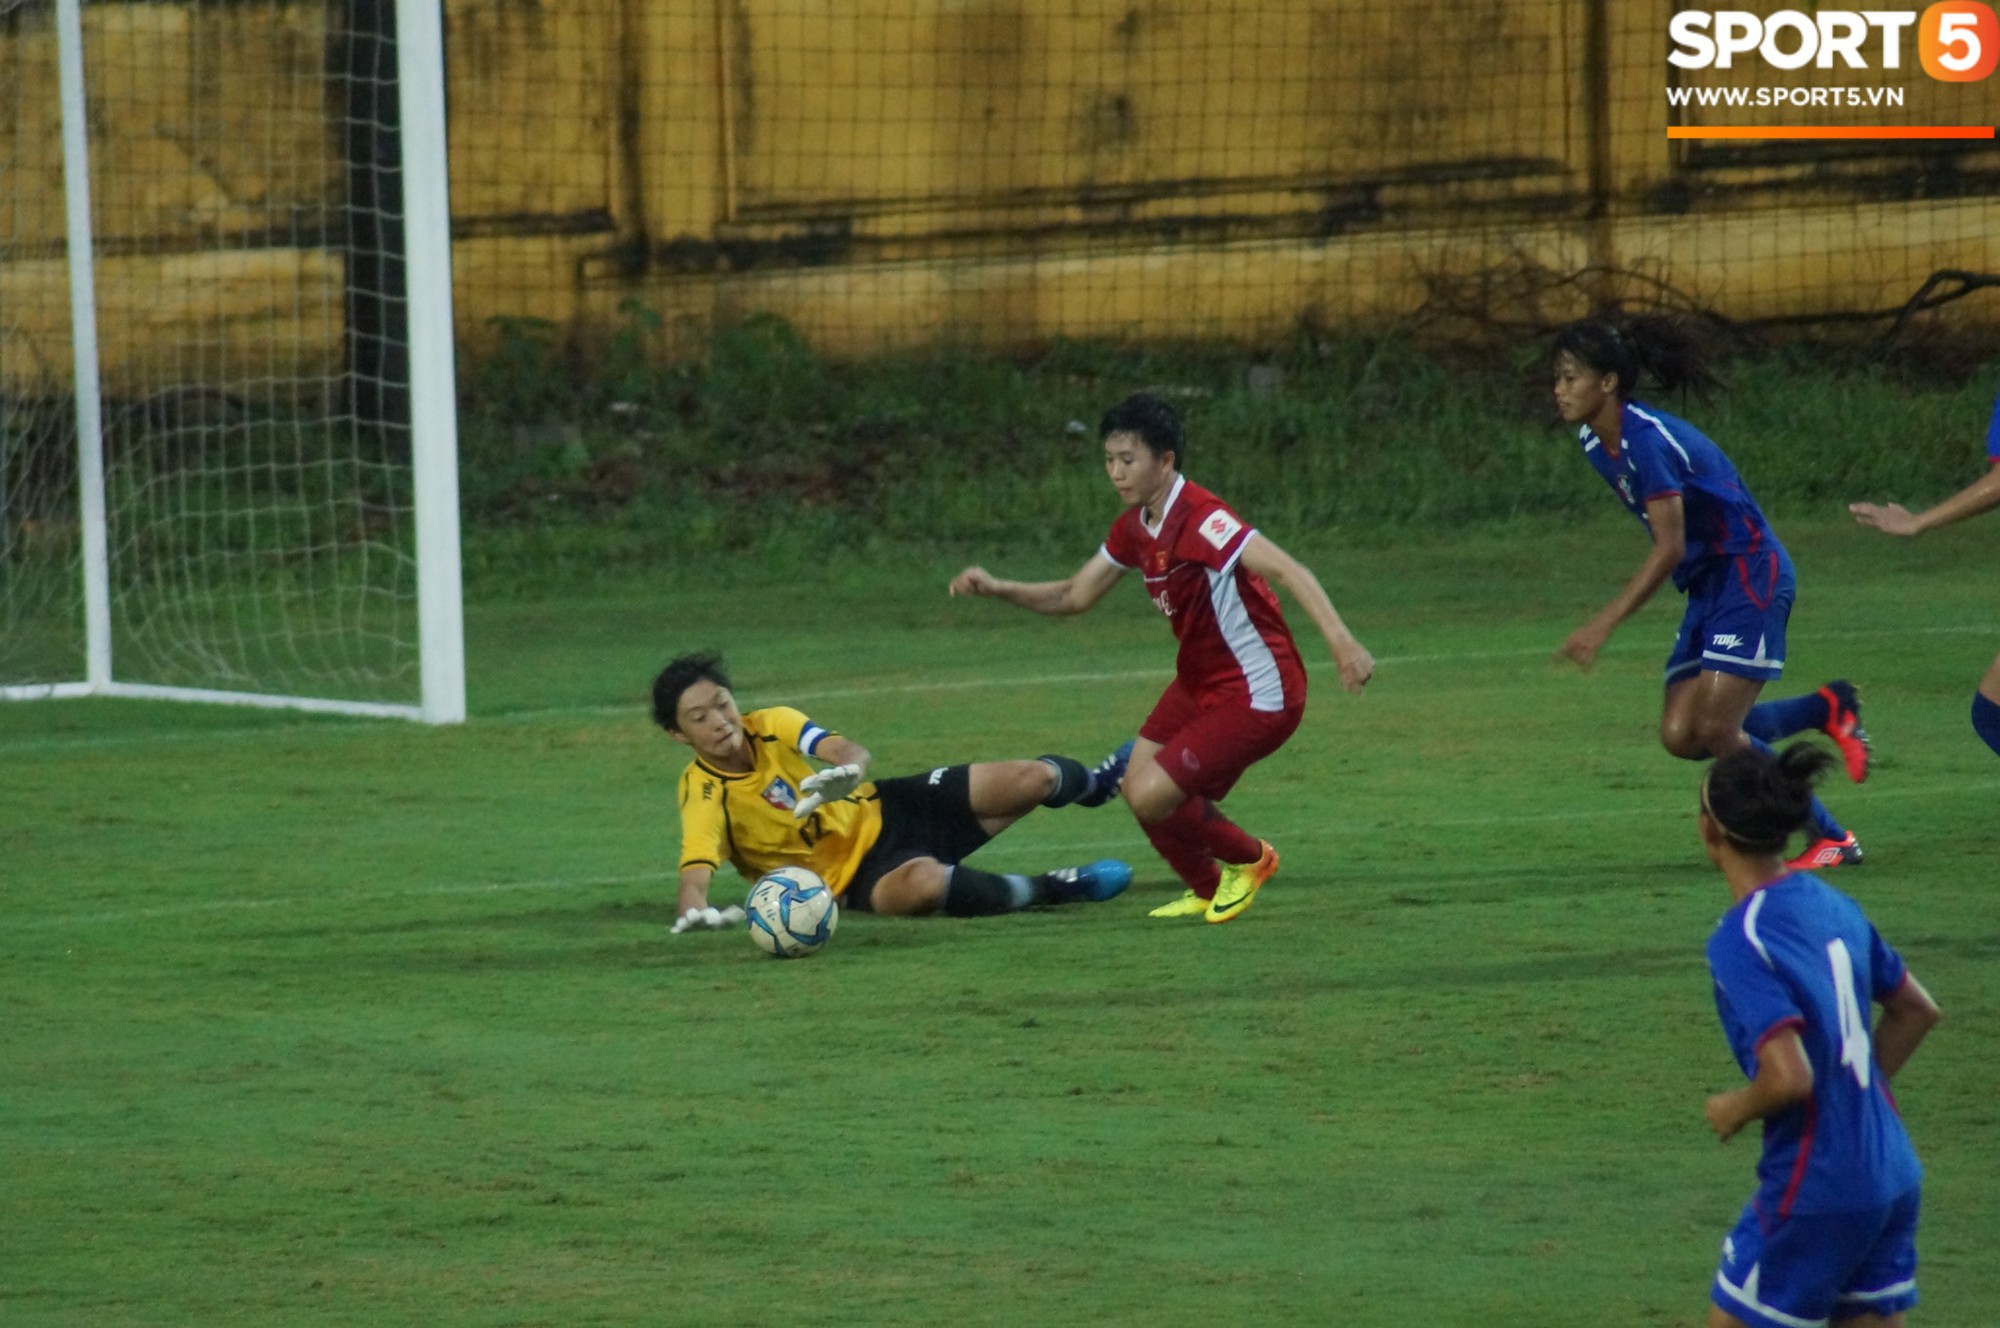 ĐT nữ Việt Nam đánh bại Đài Bắc Trung Hoa 4-0 trong trận tái đấu - Ảnh 4.